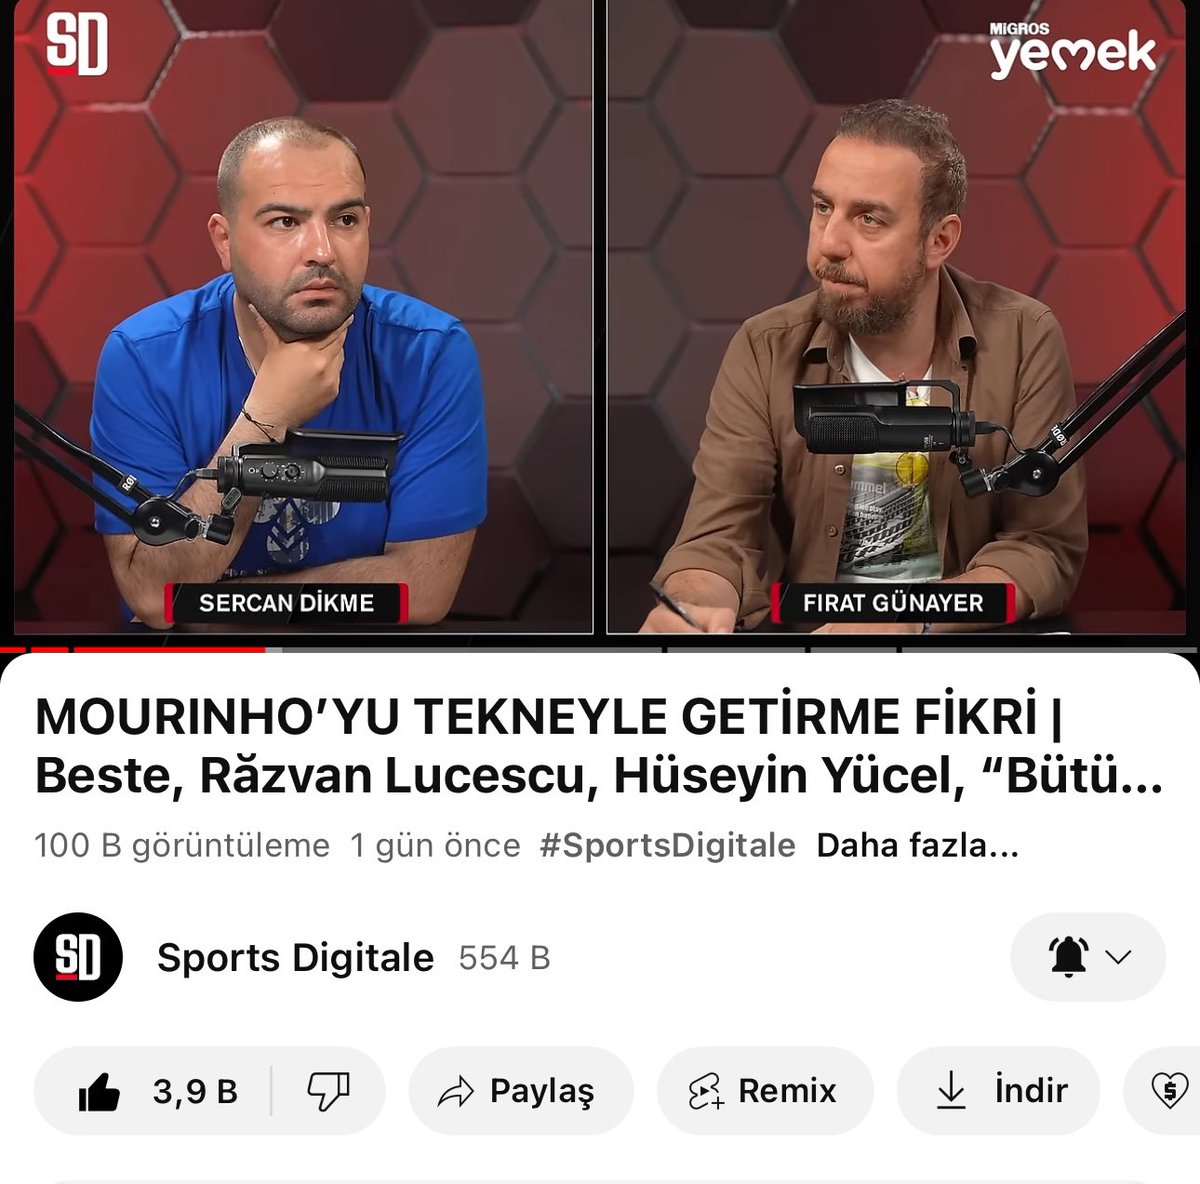 Dijital medyada bant içerik olarak en yüksek izlenmeye sahip Beşiktaş programı:) 100 bini geçtik.Teşekkürler Beşiktaşlılar. İyi ki varsınız:) seviyoruz sizi @SportsDigitale